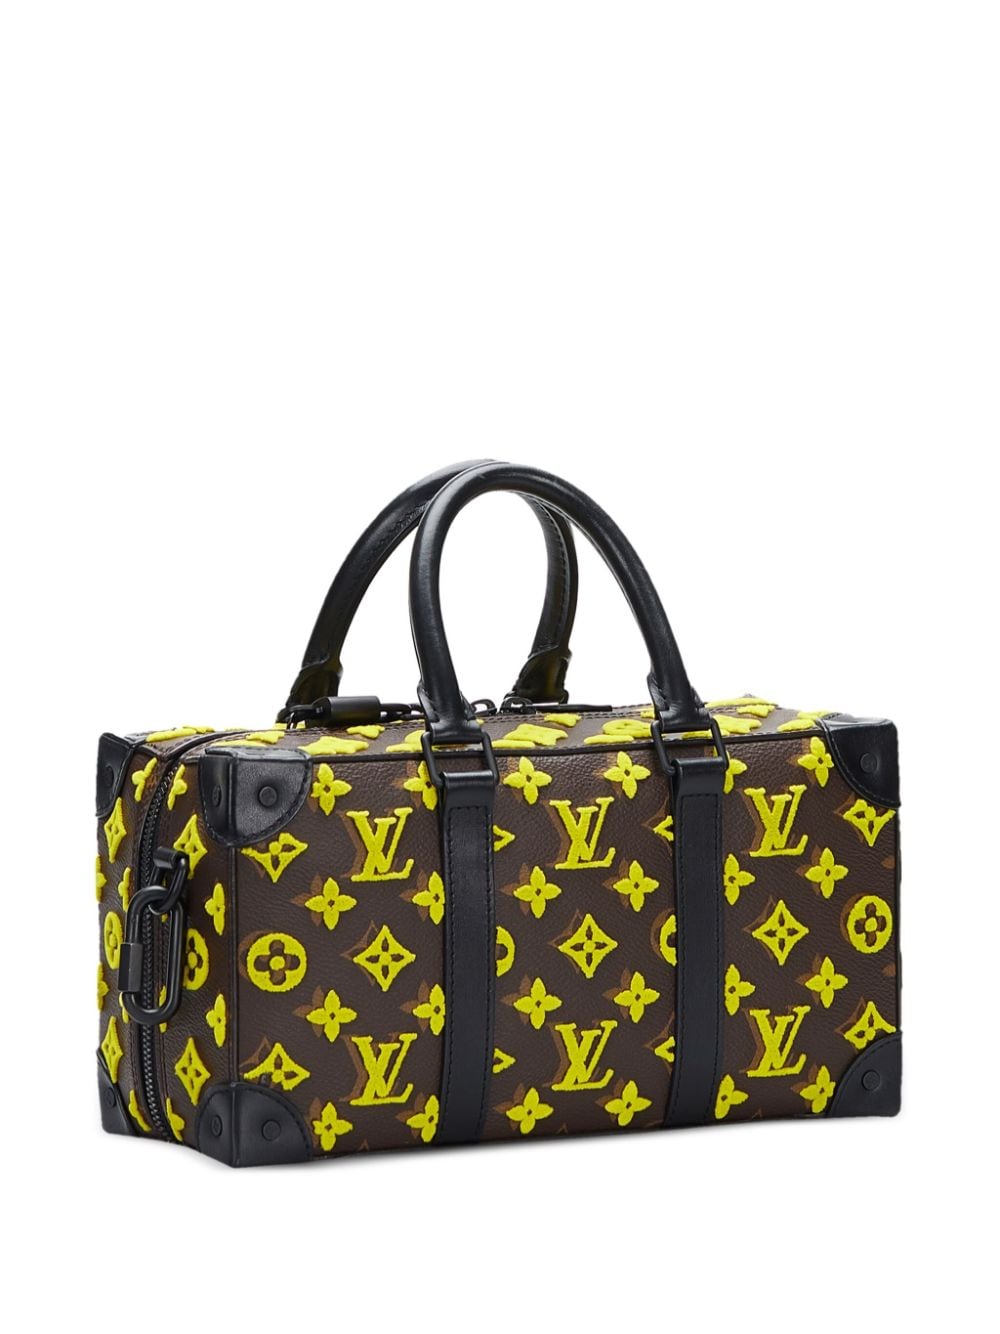 Louis Vuitton Speedy Yellow Monogram Tuffetage Trunk